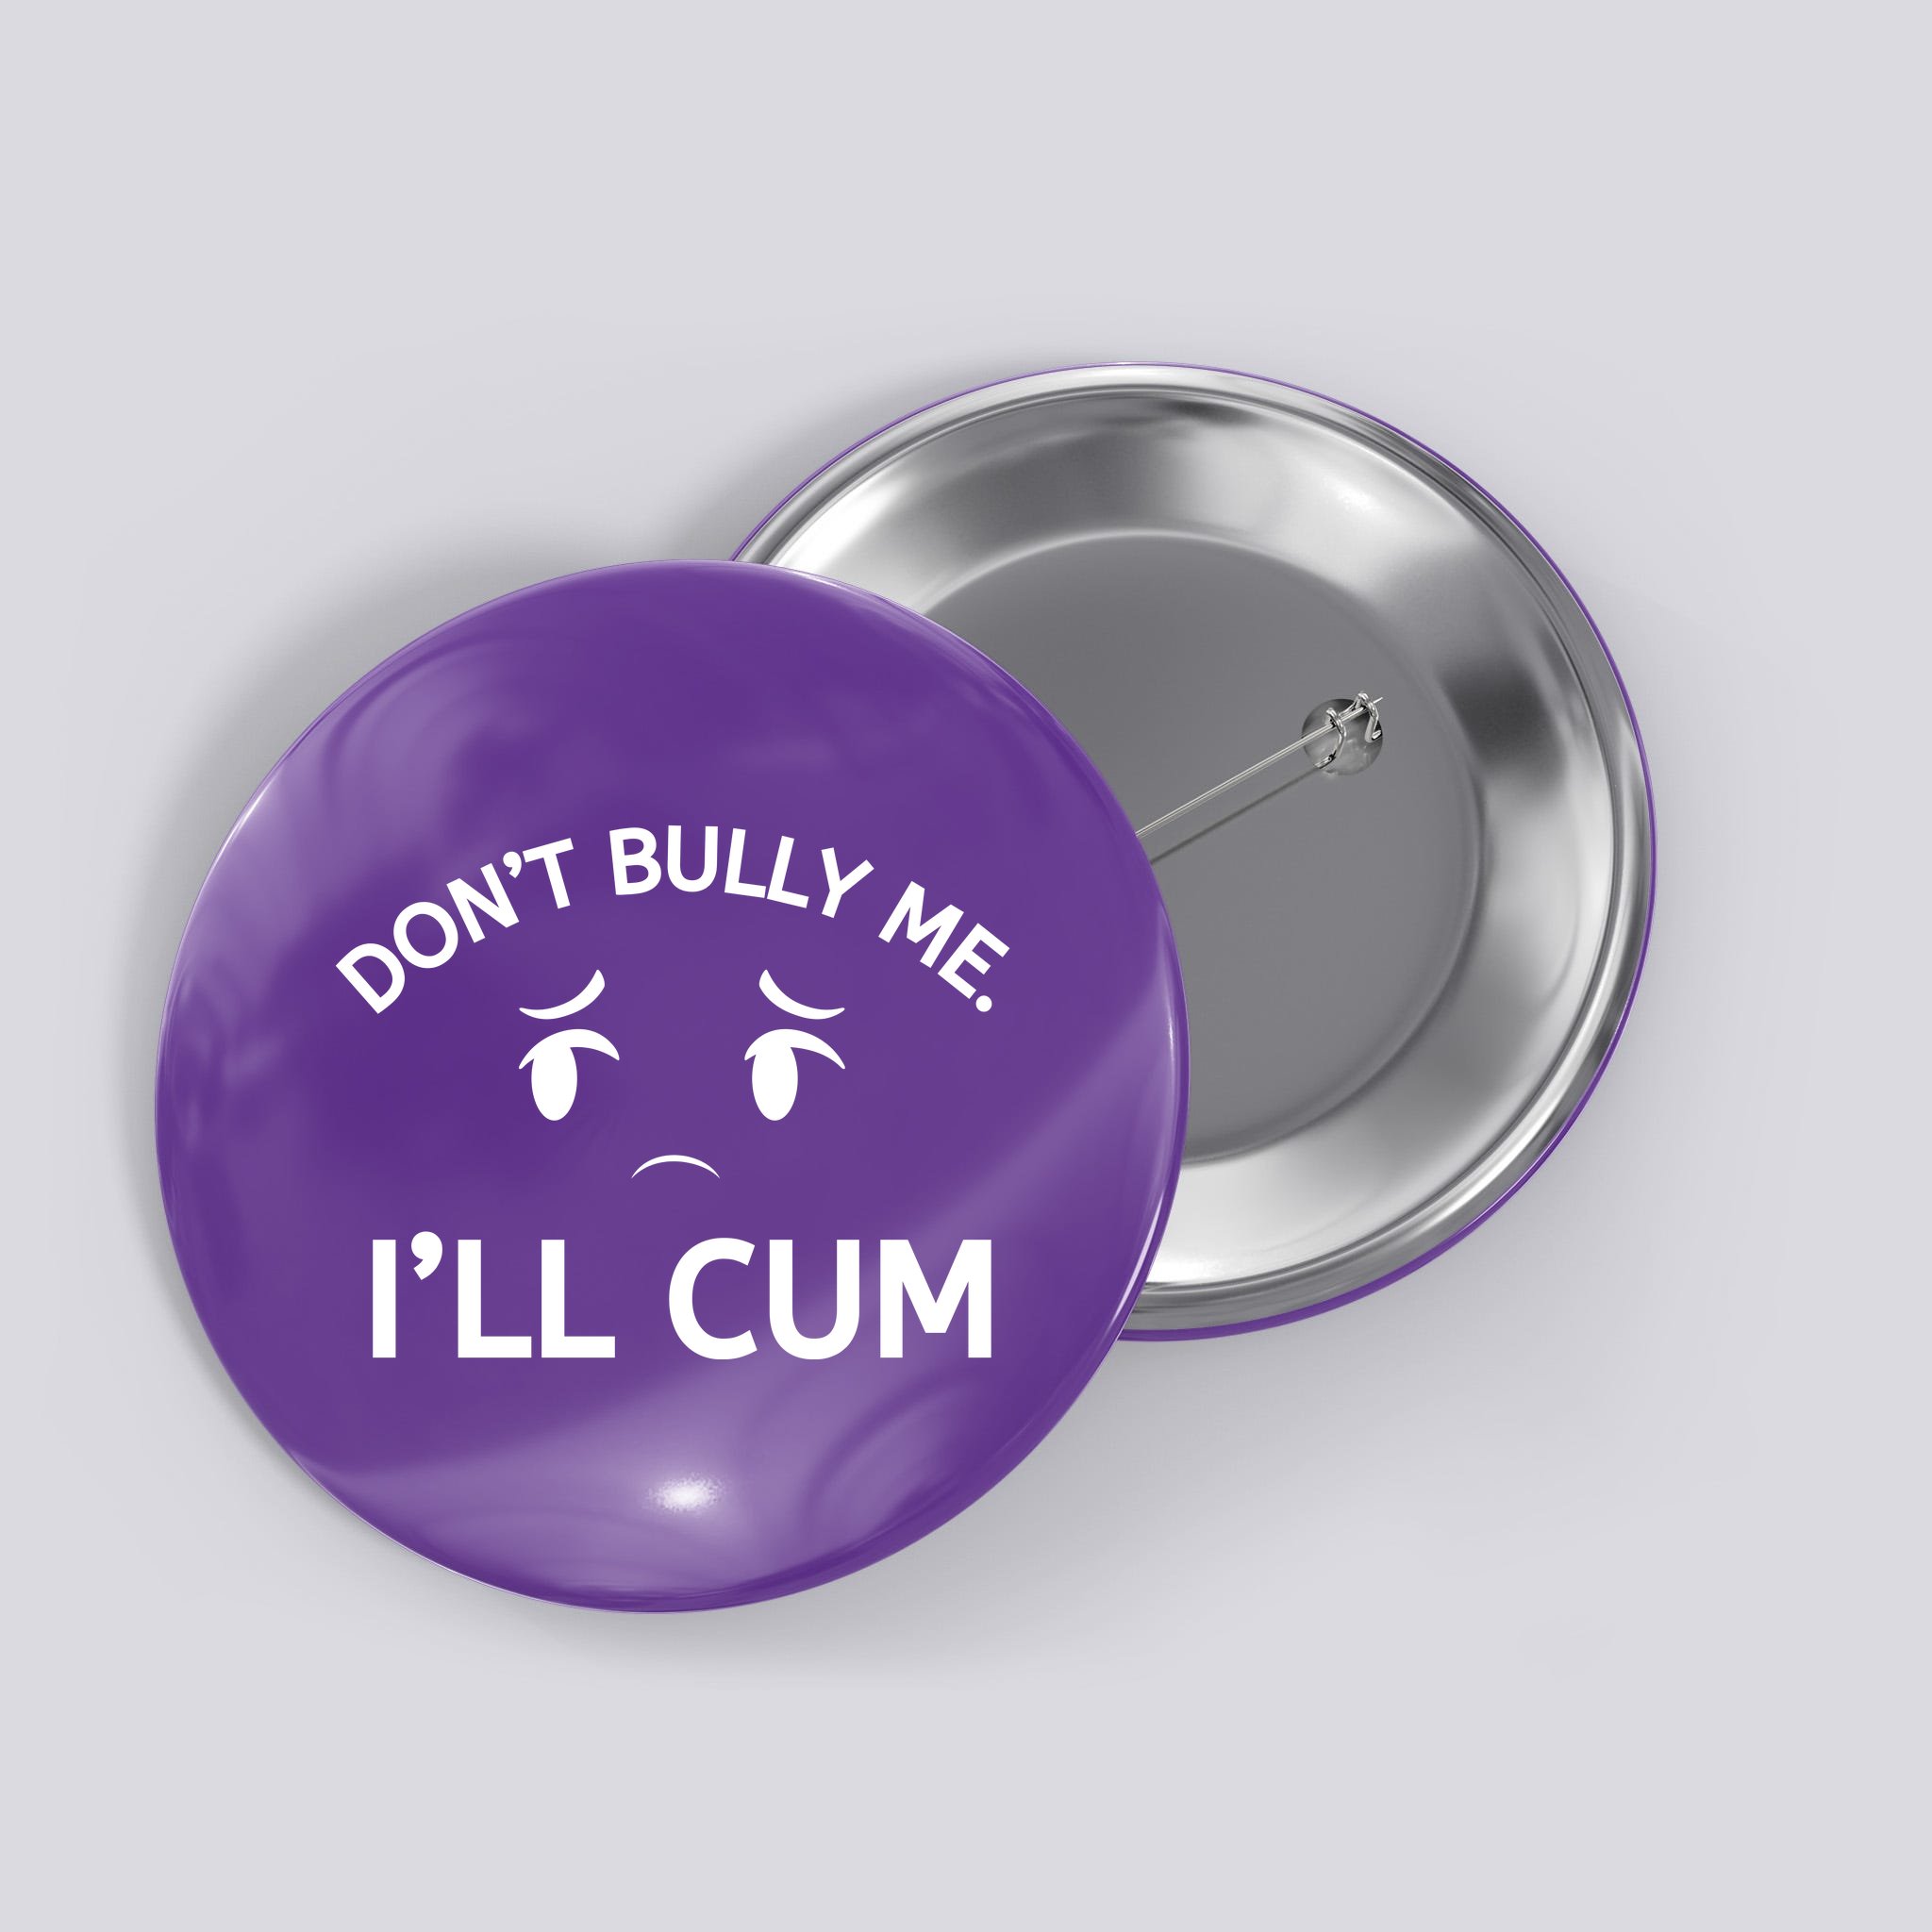 Cum button